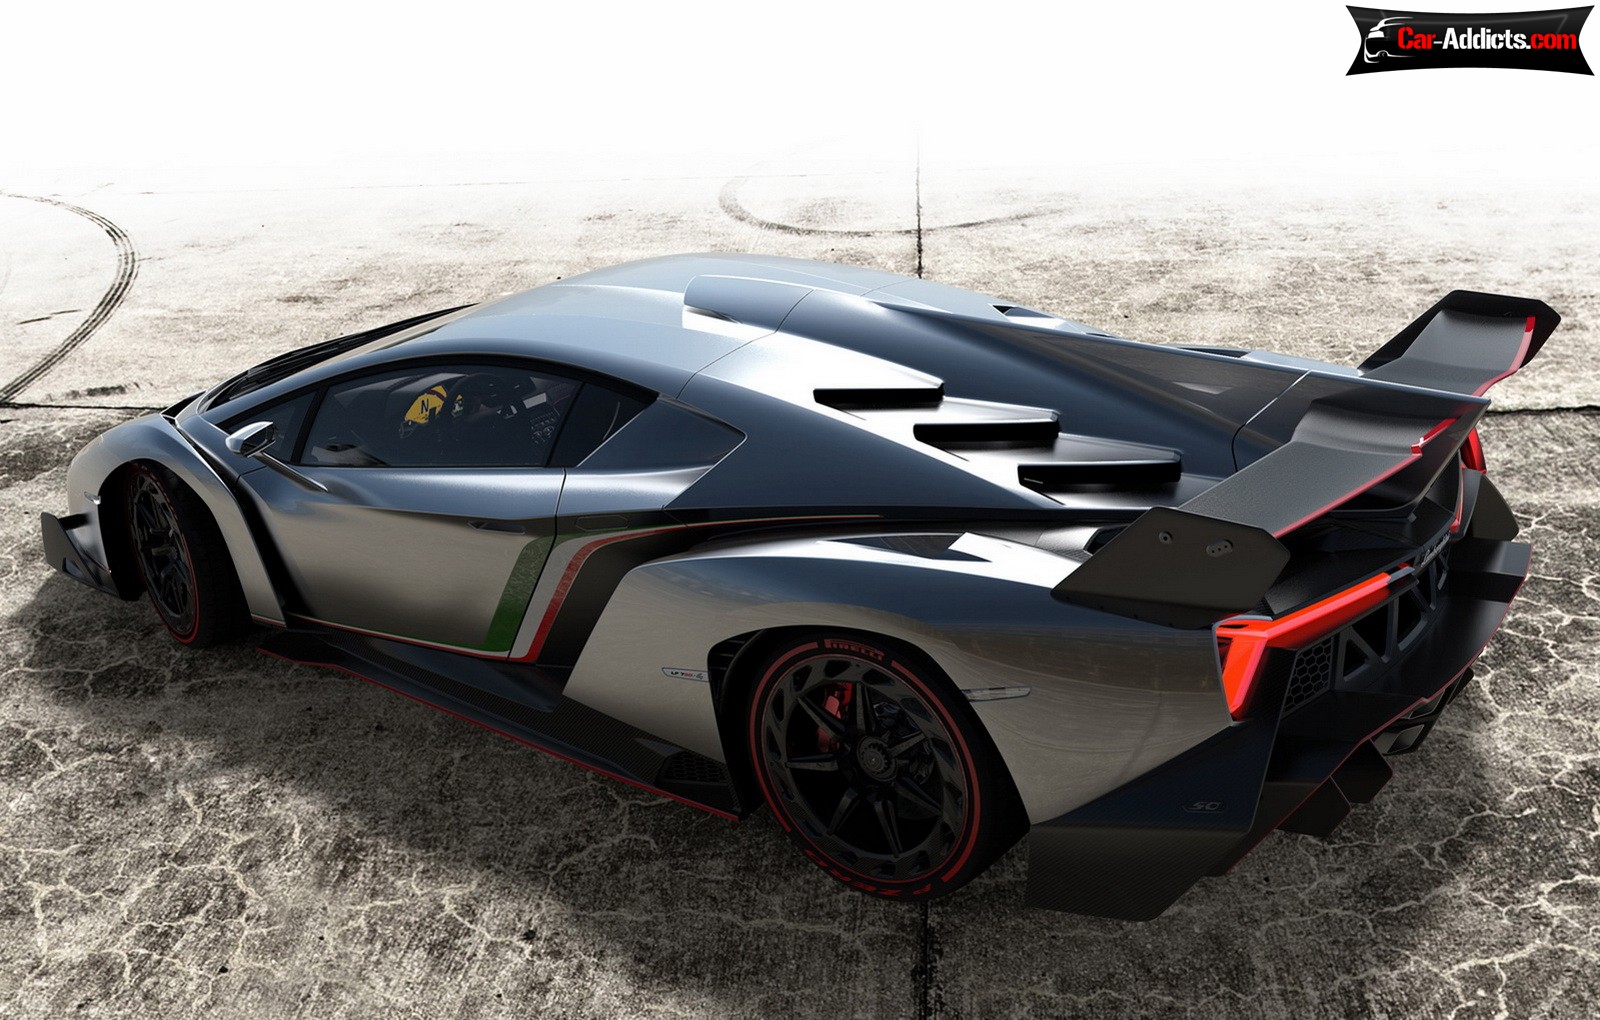 Lamborghini Veneno 01 Wallpaper - 2.3 Million Dollar Lamborghini , HD Wallpaper & Backgrounds